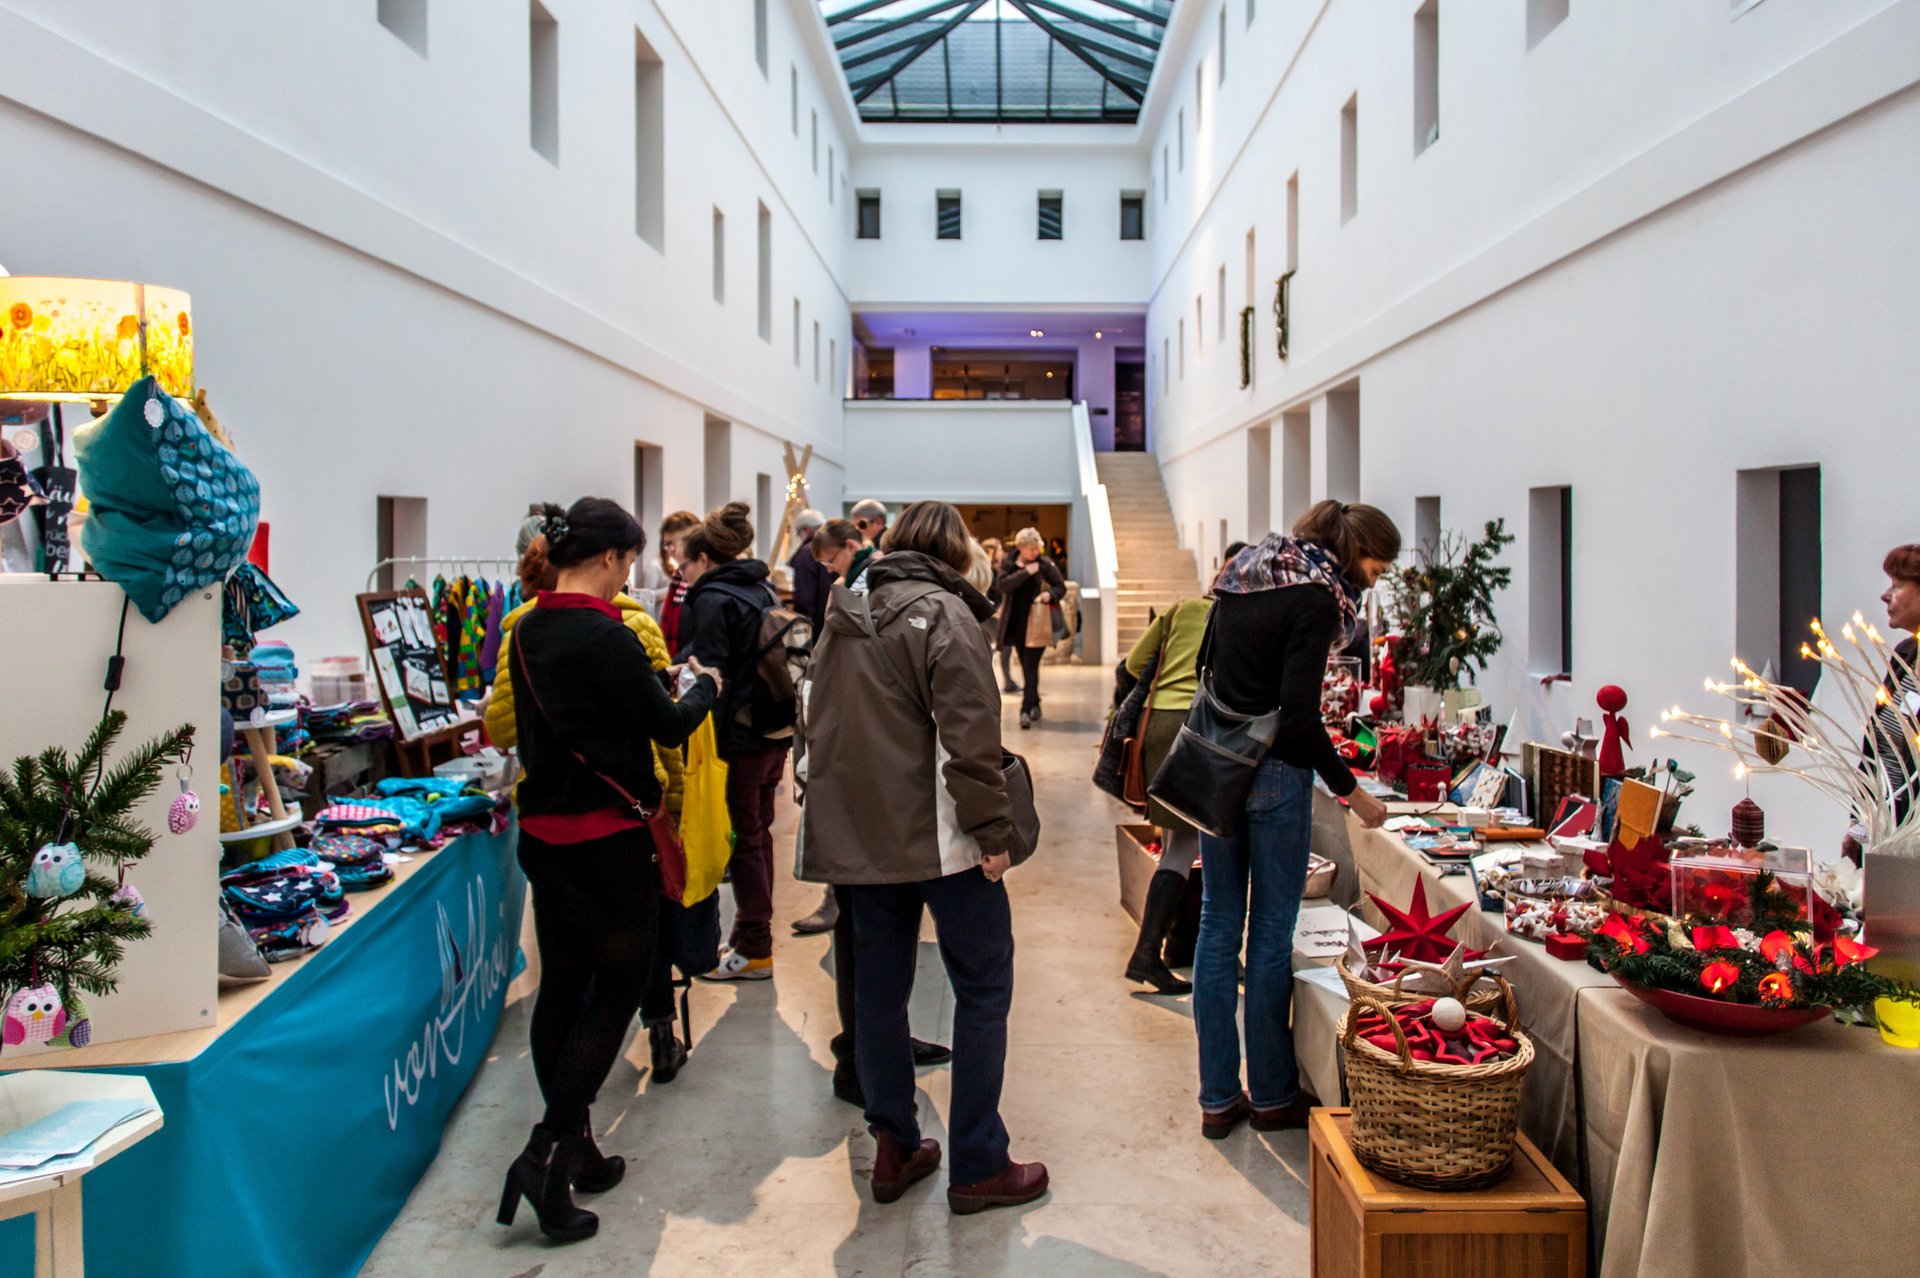 Kunsthandwerkermarkt: Blick in den Lichthof. Mehrere Stände mit weihnachtlichen Waren und Kunsthandwerk, dazwischen Besucherinnen und Besucher. Foto: Henry Dramsch